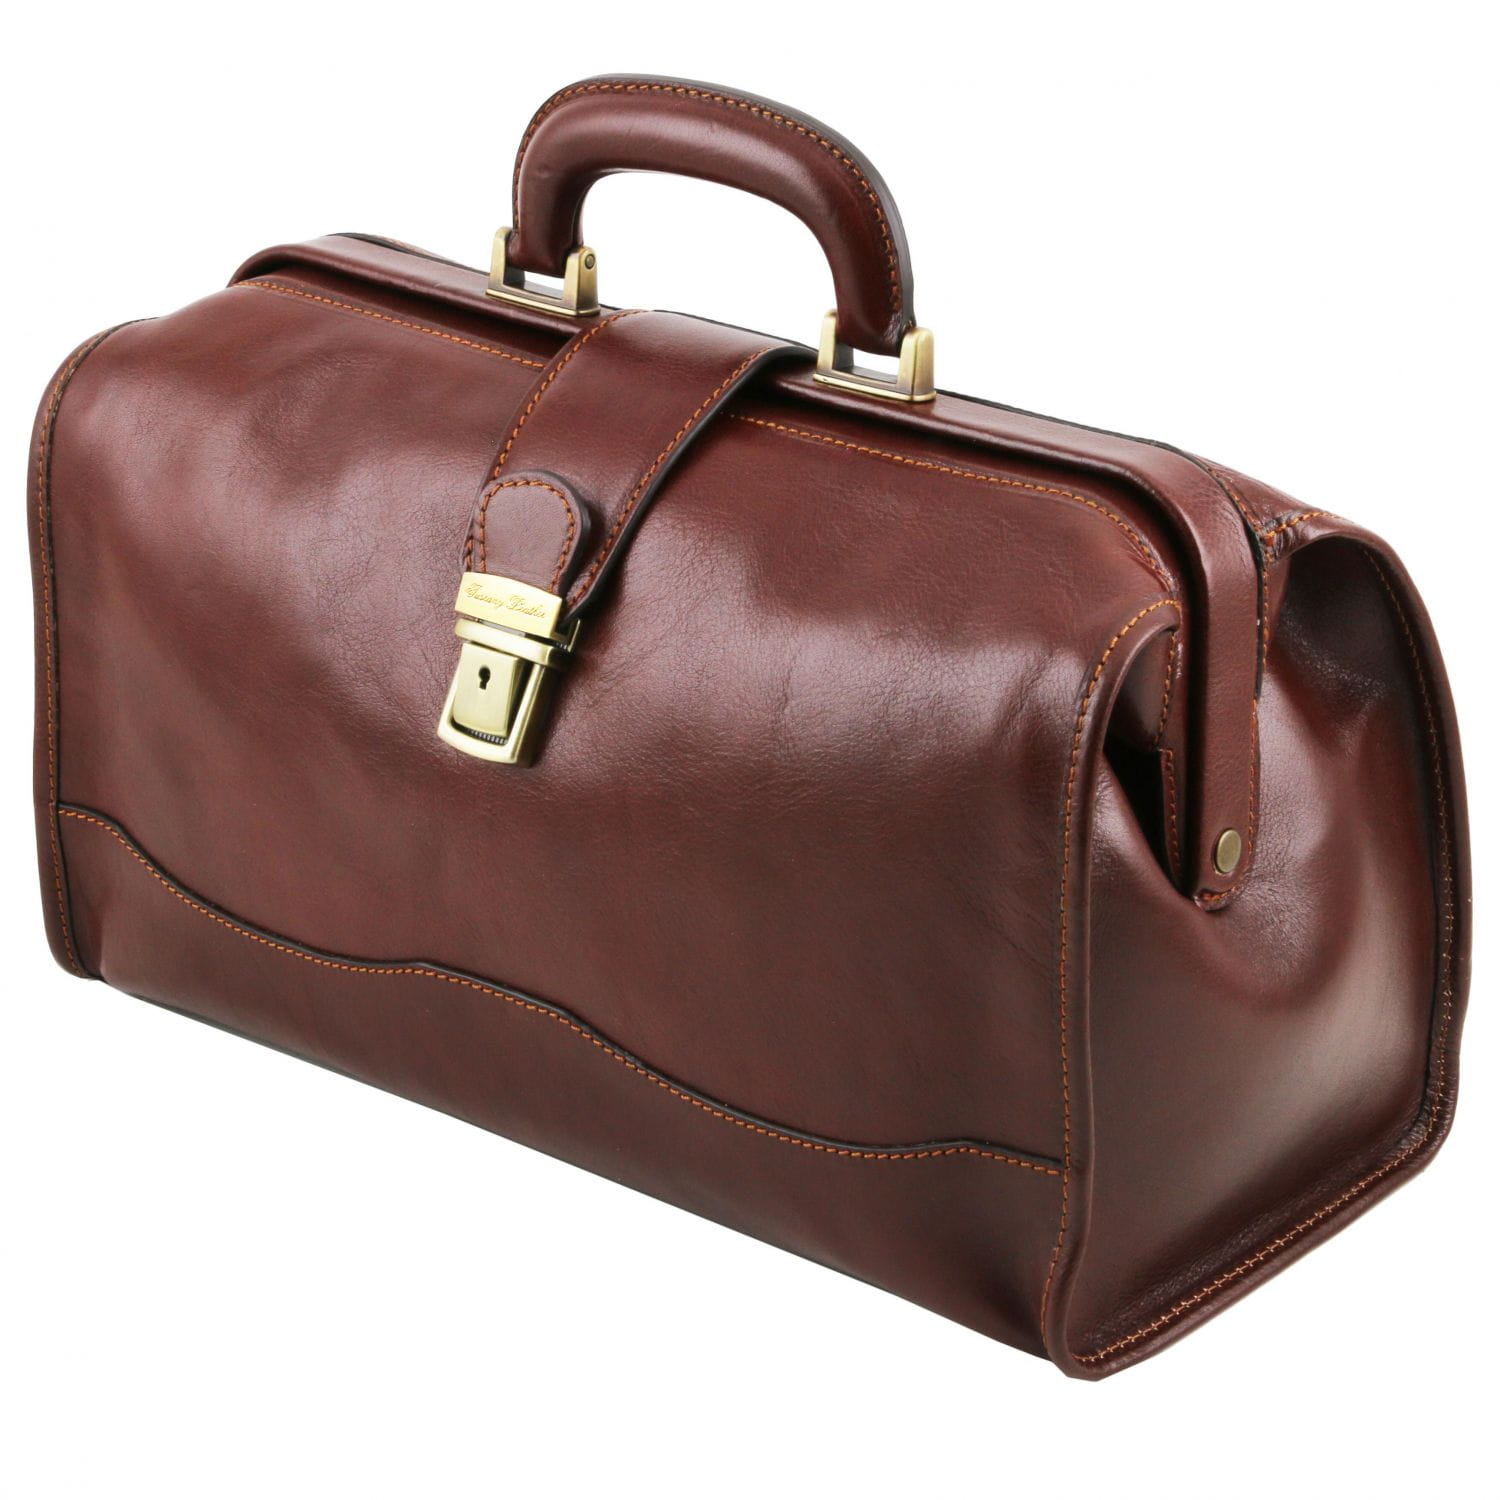 Plecaki, torby i walizki medyczne Tuscany Leather Rafa